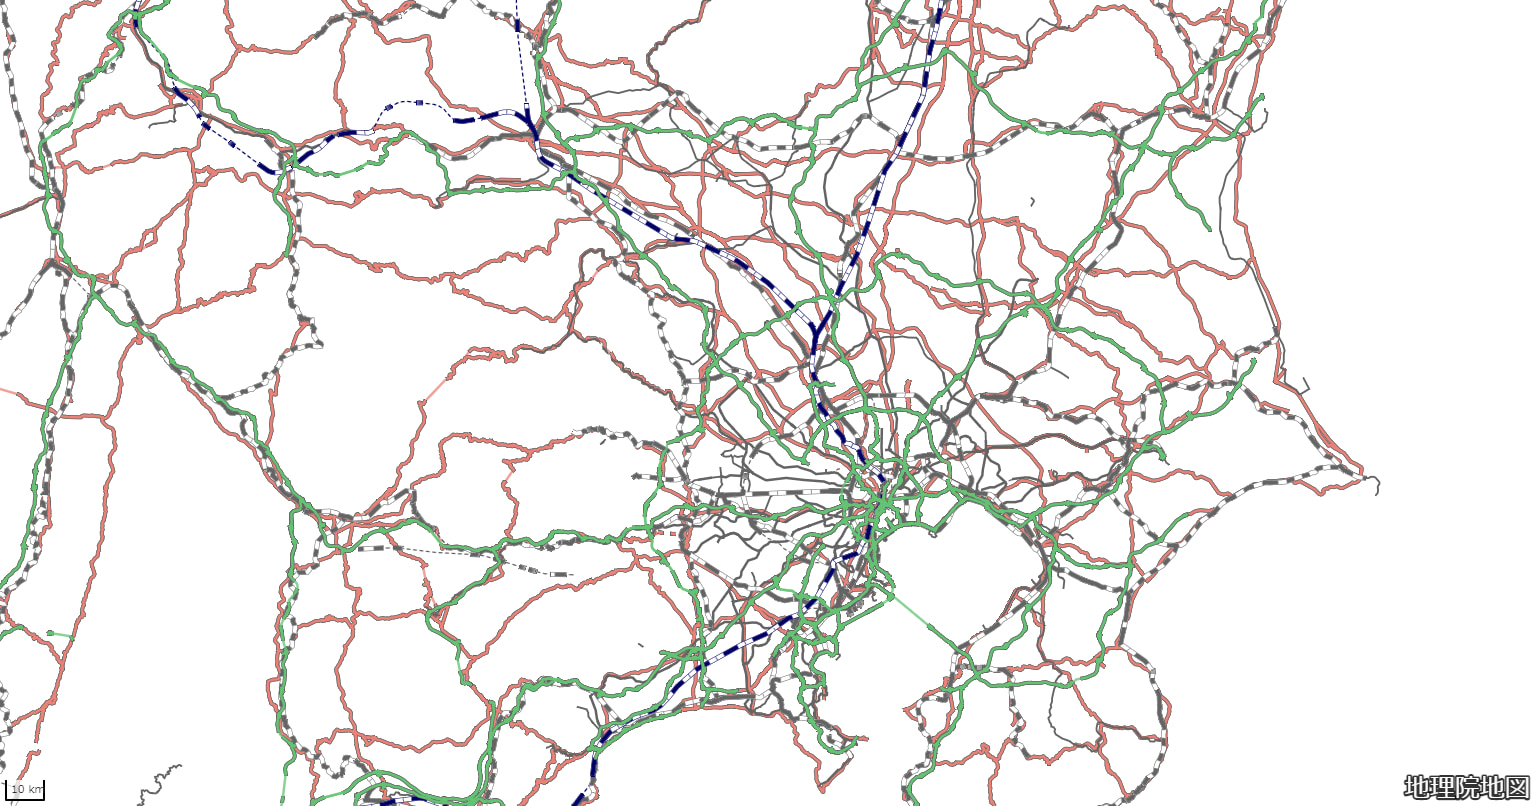 地理院地図Vectorで道路・鉄道を表示、出典：国土地理院ウェブサイト「地理院地図Vector」（https://maps.gsi.go.jp/vector/）